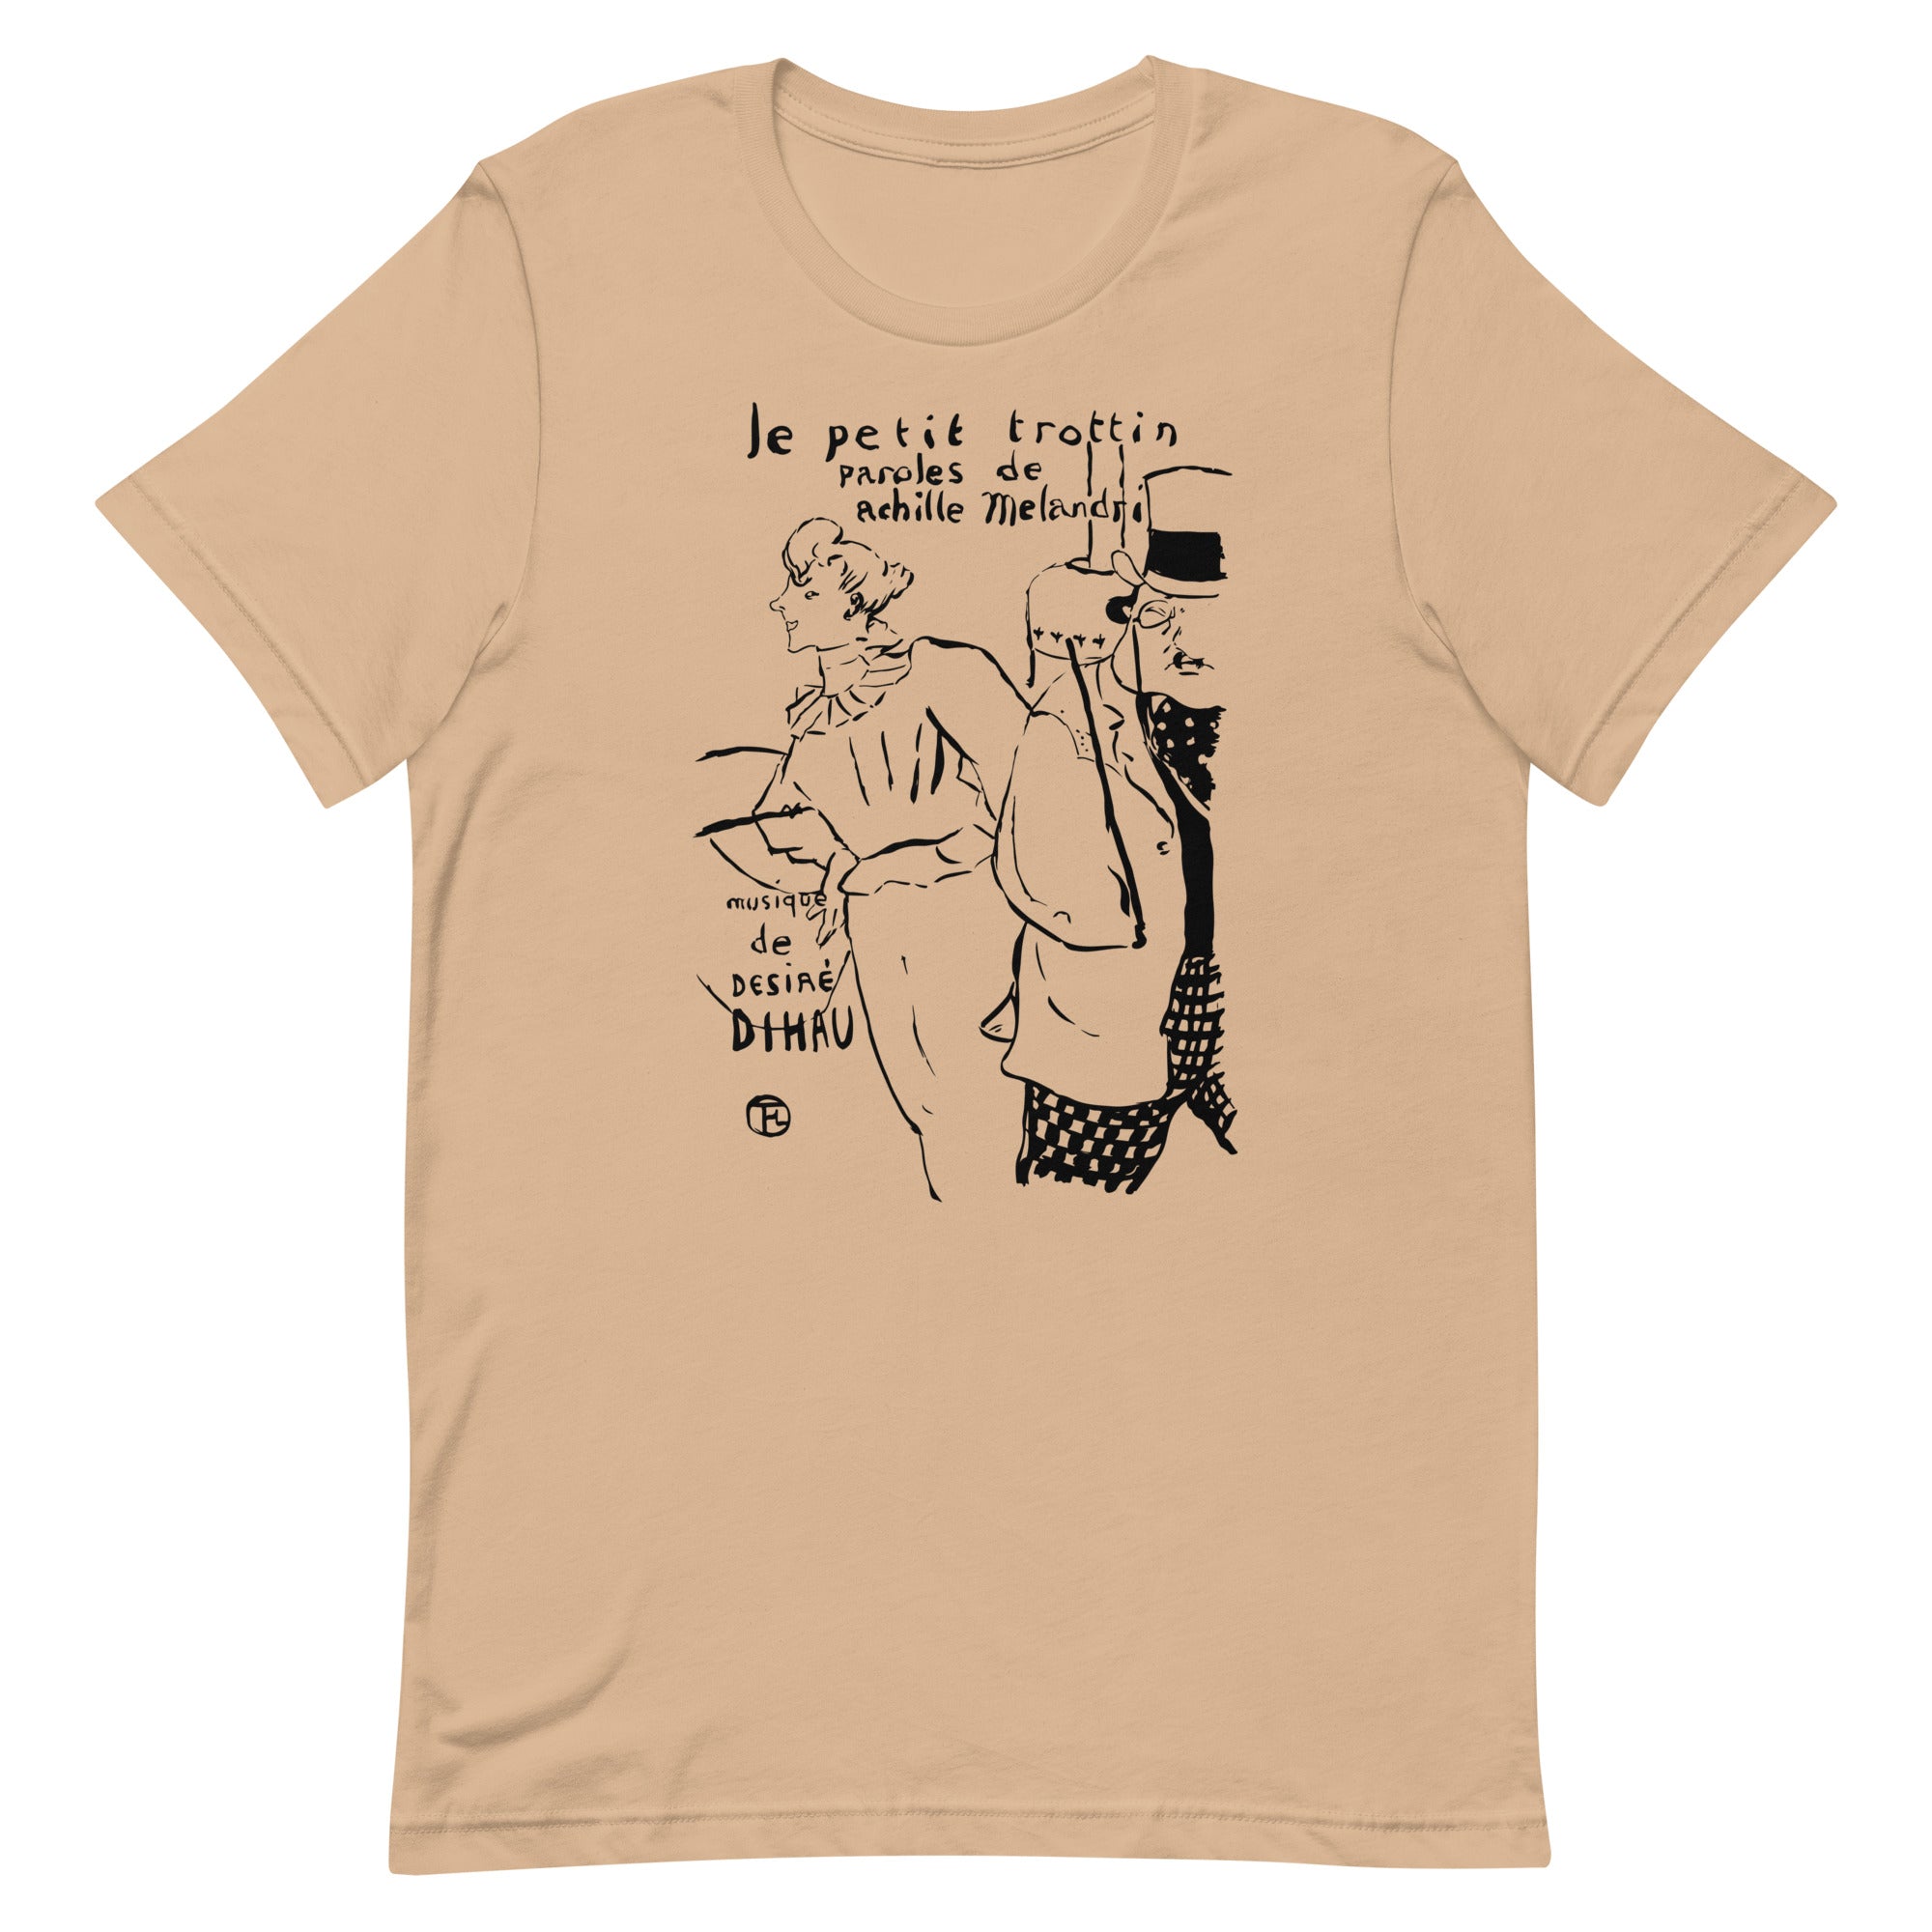 Petite fille de courses. Toulouse-Lautrec. T-shirt unisexe